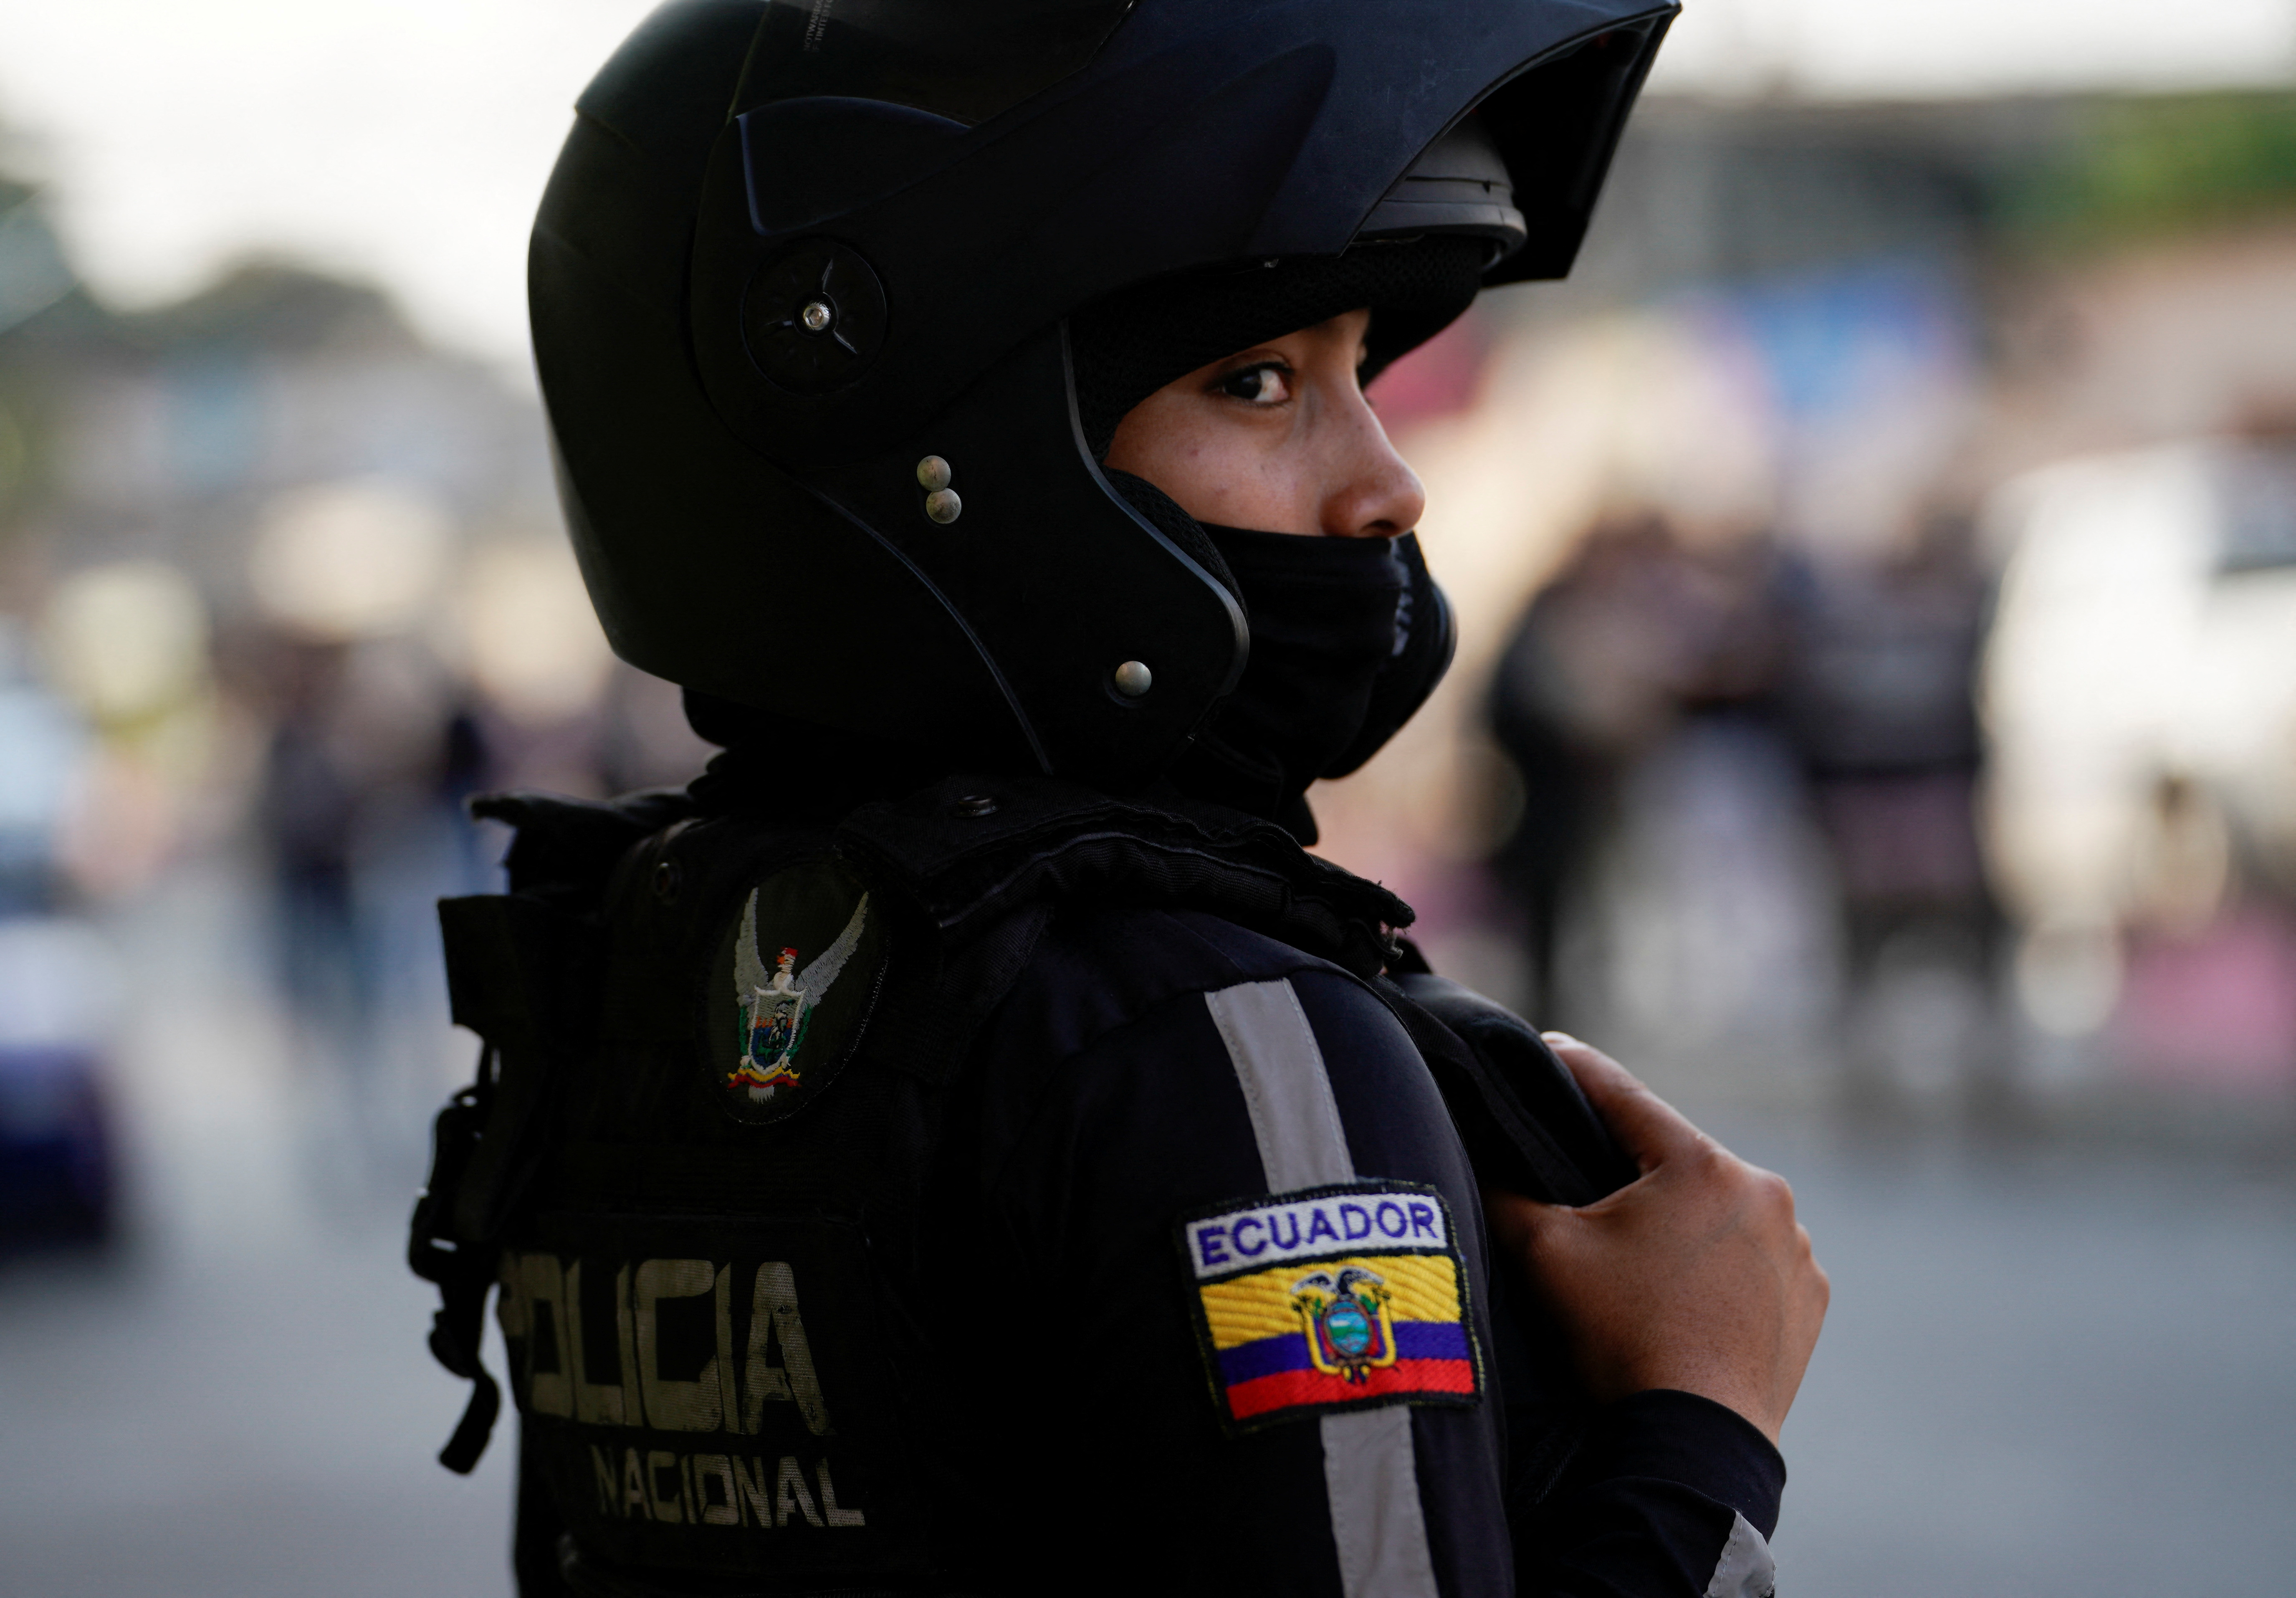 El presidente de Ecuador ha prometido incorporar 20.000 nuevos miembros a la Policía Nacional hasta terminar su mandato en 2025. (REUTERS/Santiago Arcos)